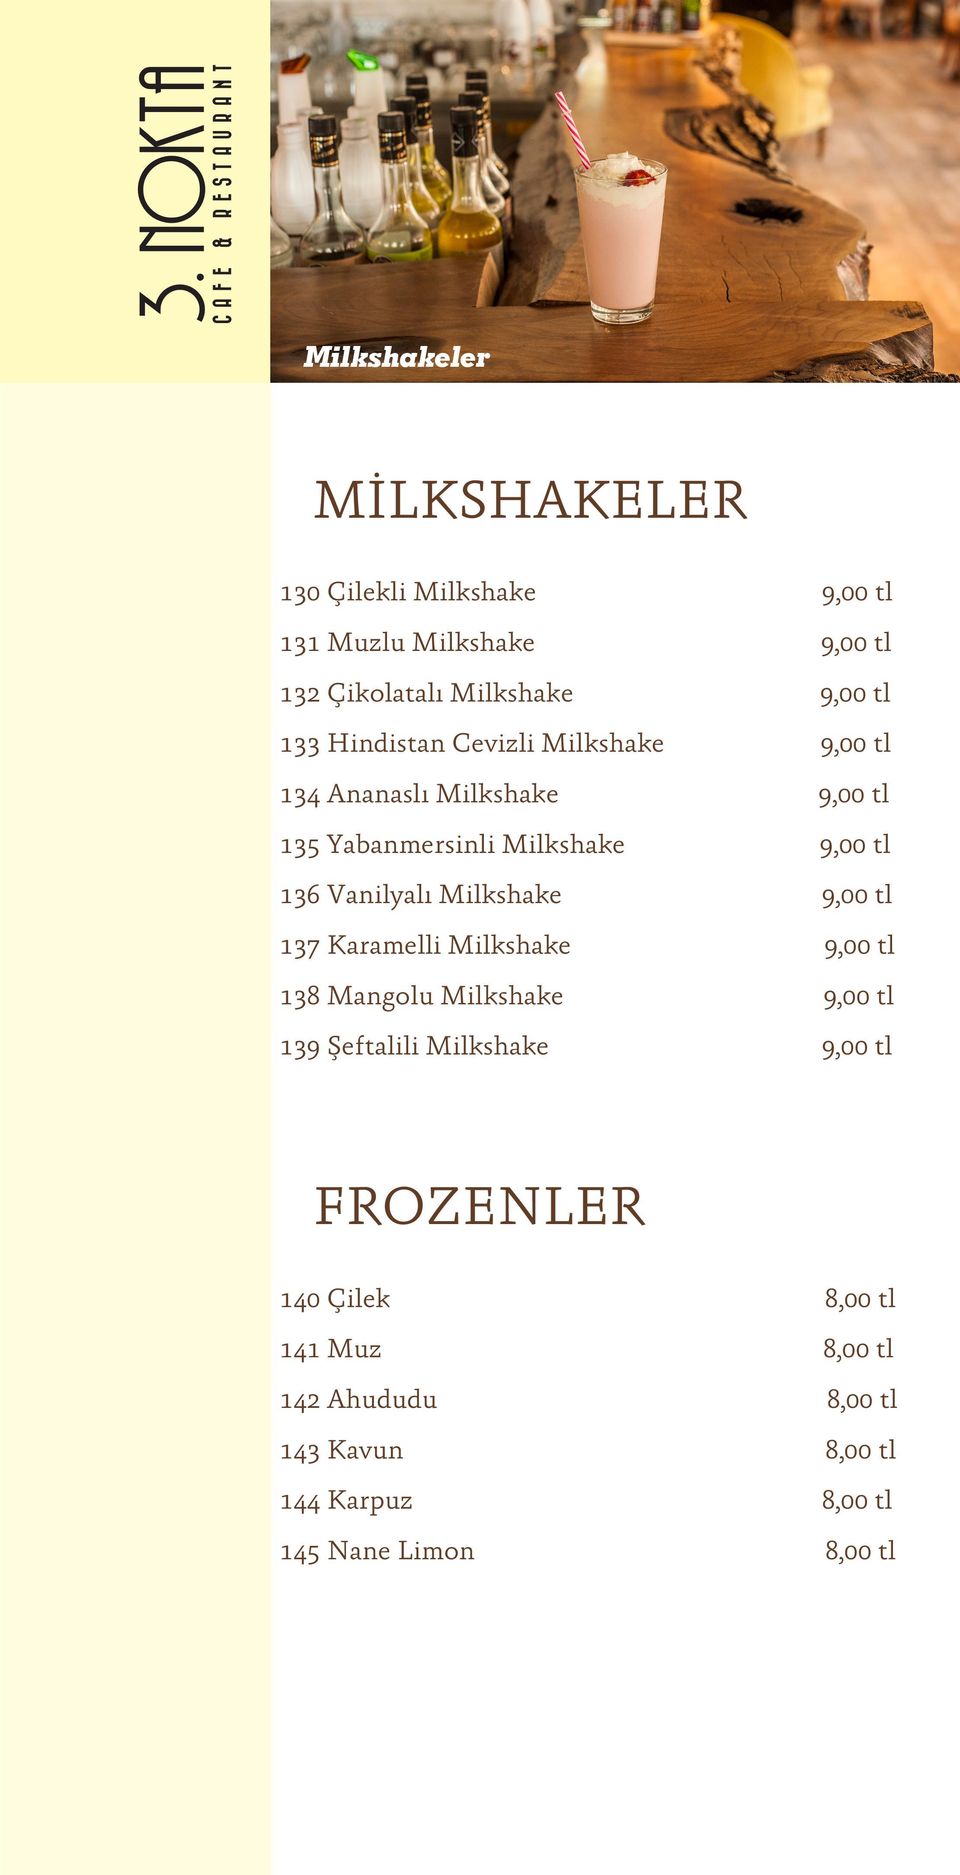 Vanilyalı Milkshake 9,00 tl 137 Karamelli Milkshake 9,00 tl 138 Mangolu Milkshake 9,00 tl 139 Şeftalili Milkshake 9,00